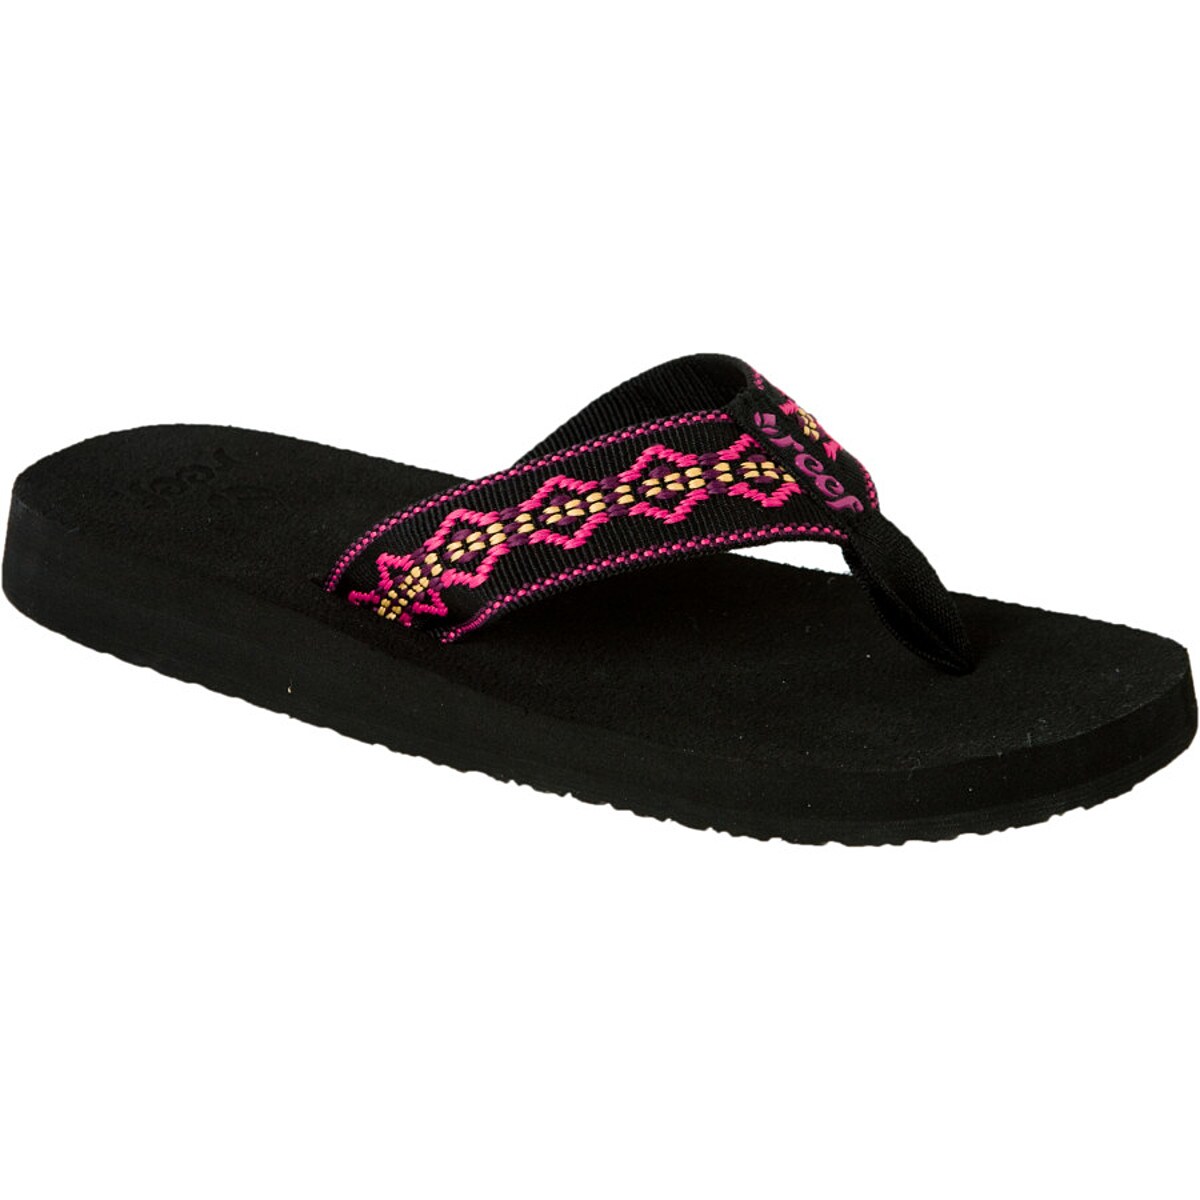 Black 100% Authentic New Woman Reef Sandy Sandal Flip Flops RF1541 Color Black